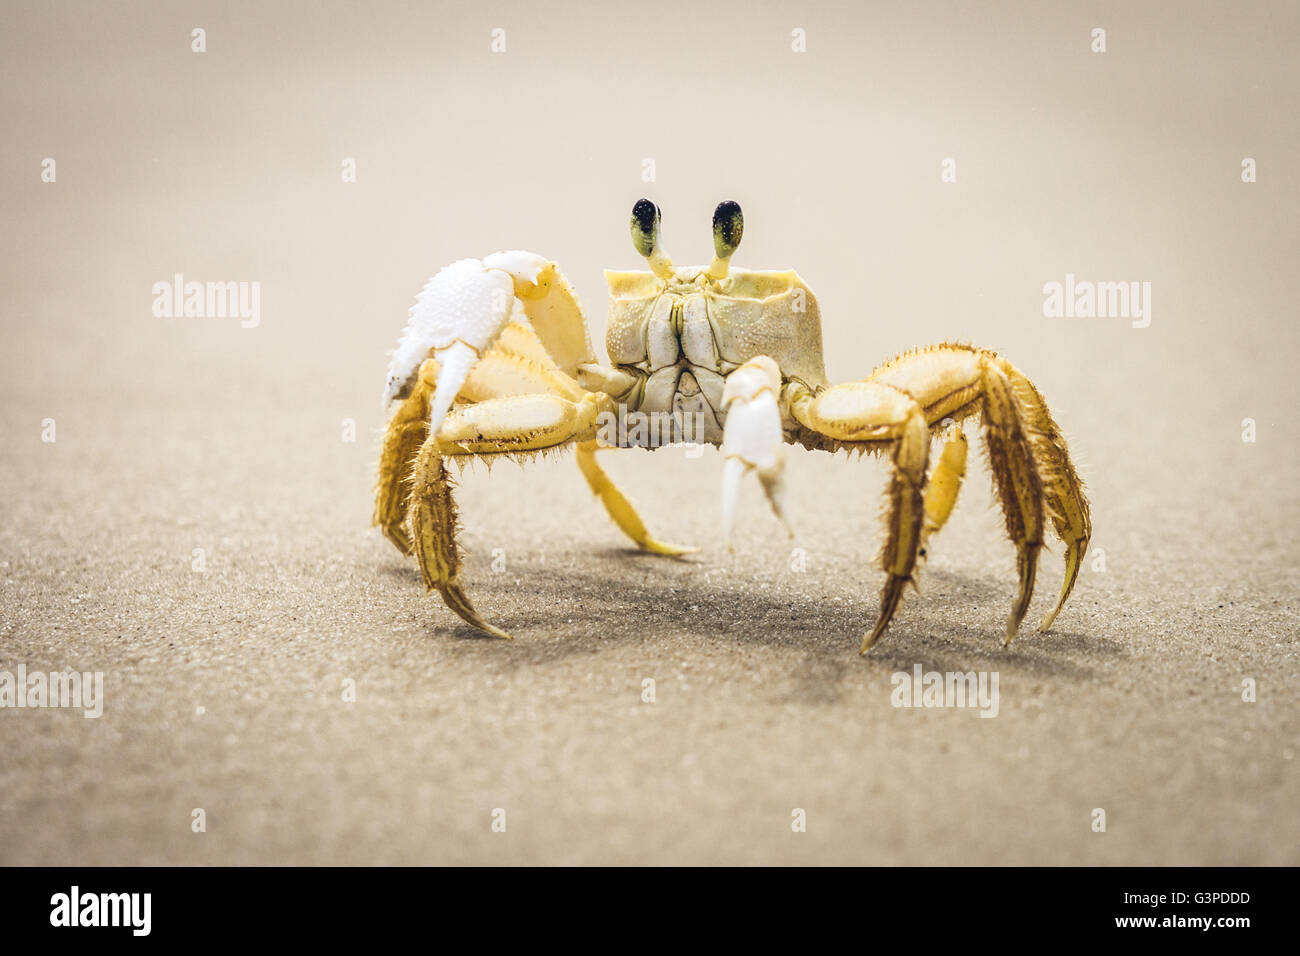 Un crabe sur une plage de sable mouillé Banque D'Images